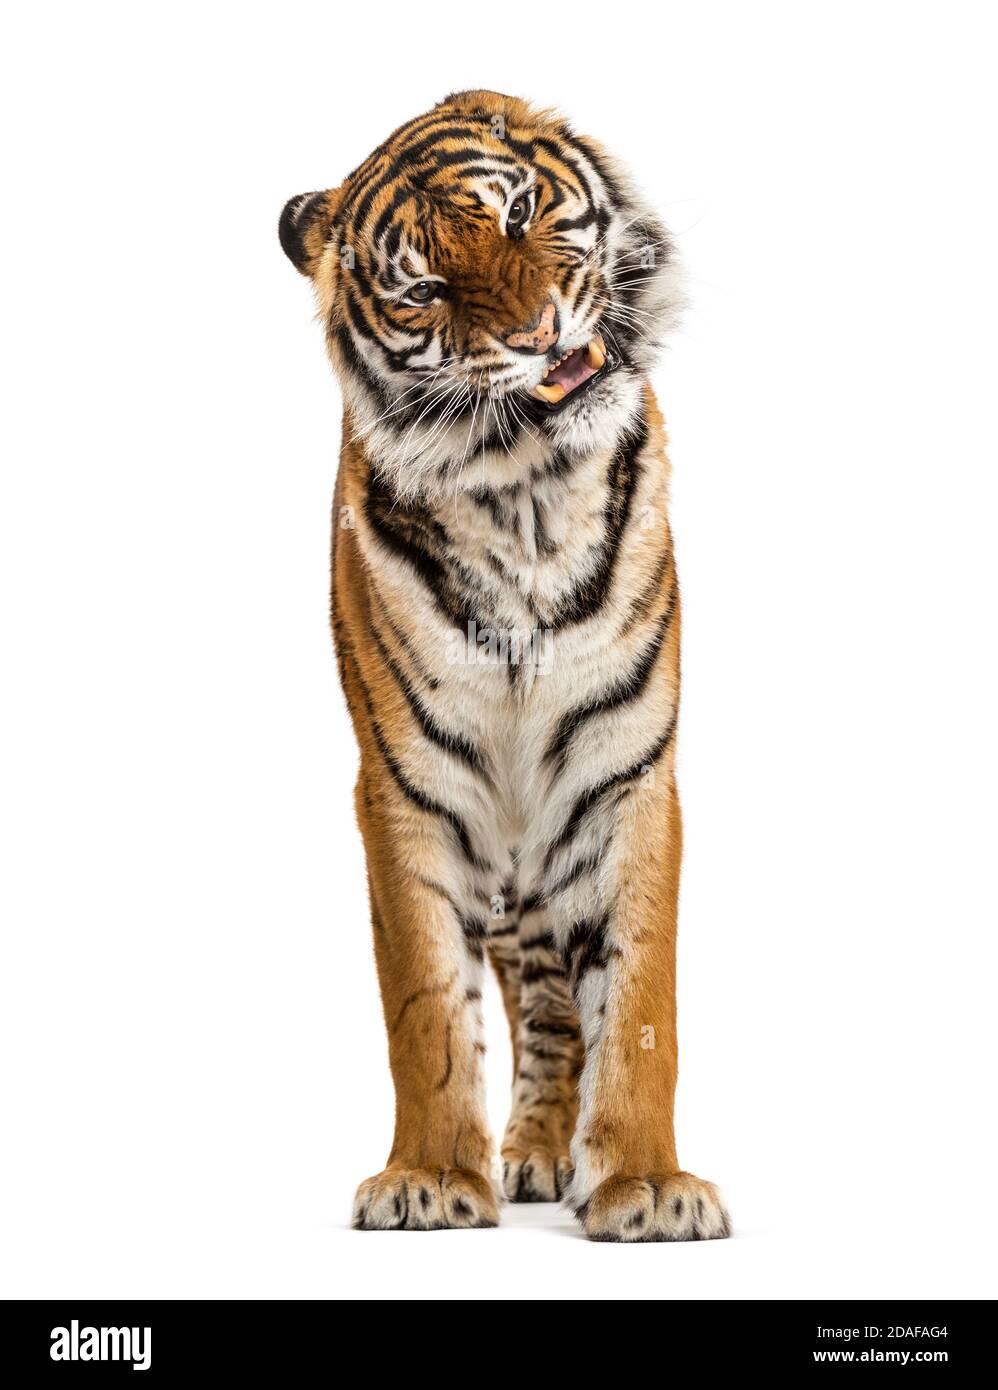 Porträt eines Tigers, der seinen Zahn zeigt und aggressiv, isoliert aussieht Stockfoto